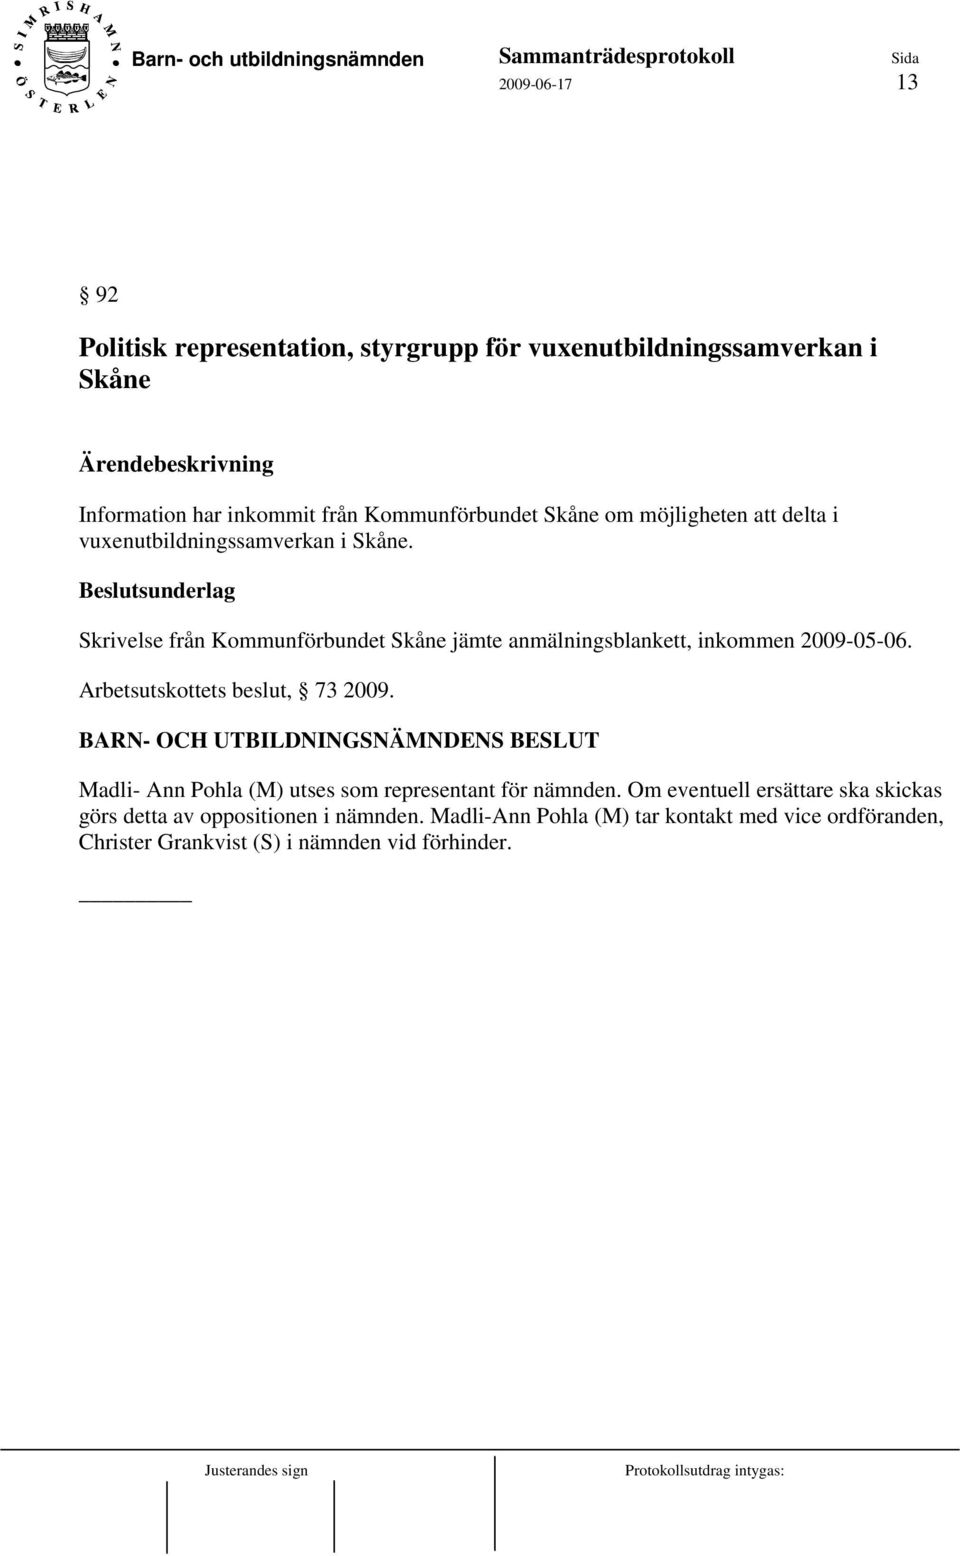 Beslutsunderlag Skrivelse från Kommunförbundet Skåne jämte anmälningsblankett, inkommen 2009-05-06. Arbetsutskottets beslut, 73 2009.